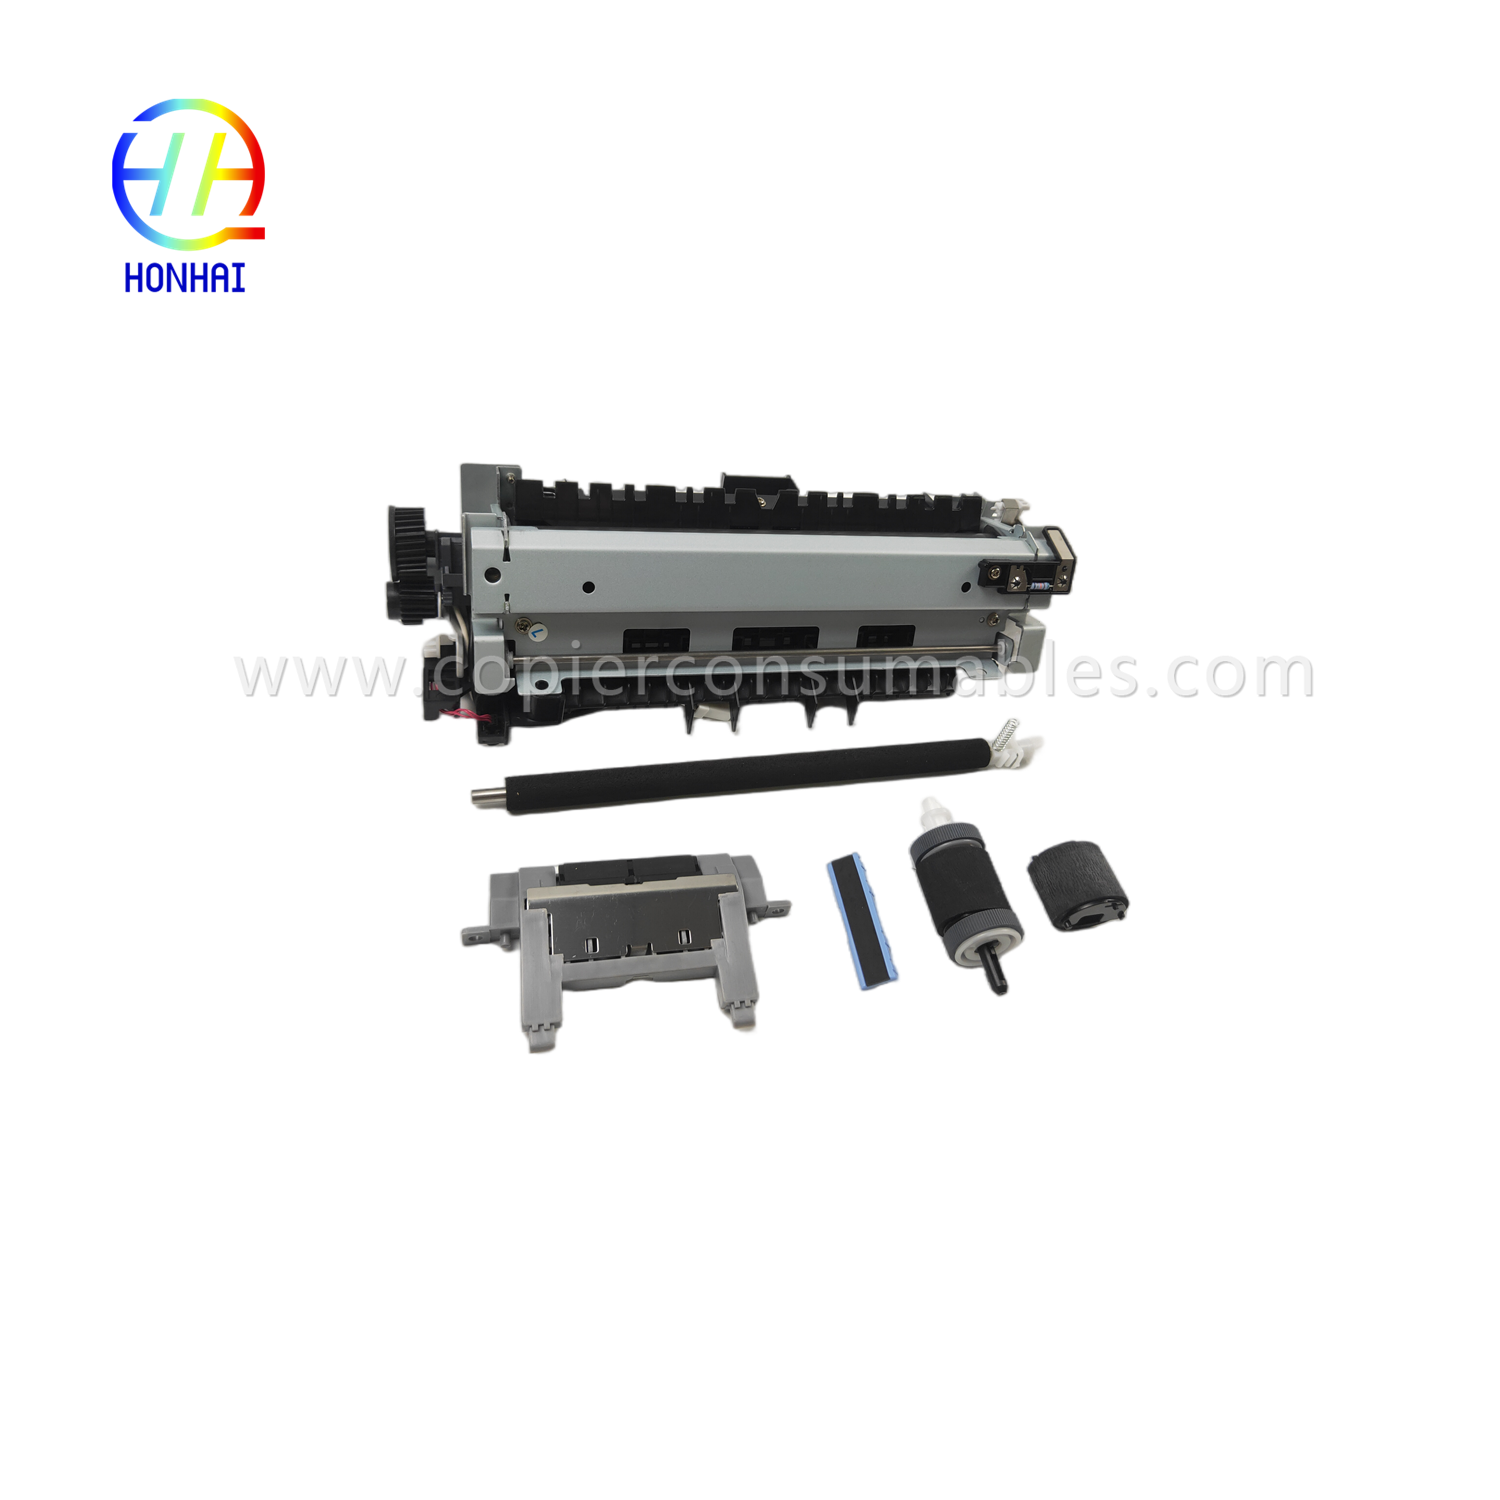 https://c585.goodao.net/maintenance-kit-220v-japan-for-hp-cf116-67903-laserjet-enterprise-500-mfp-m525-flow-mfp-m525c-pro-mfp-m521-includes- fuser-transfer-roller-dulang-1-separation-pad-tray-2-roller-dulay-2-separation-pad-product/